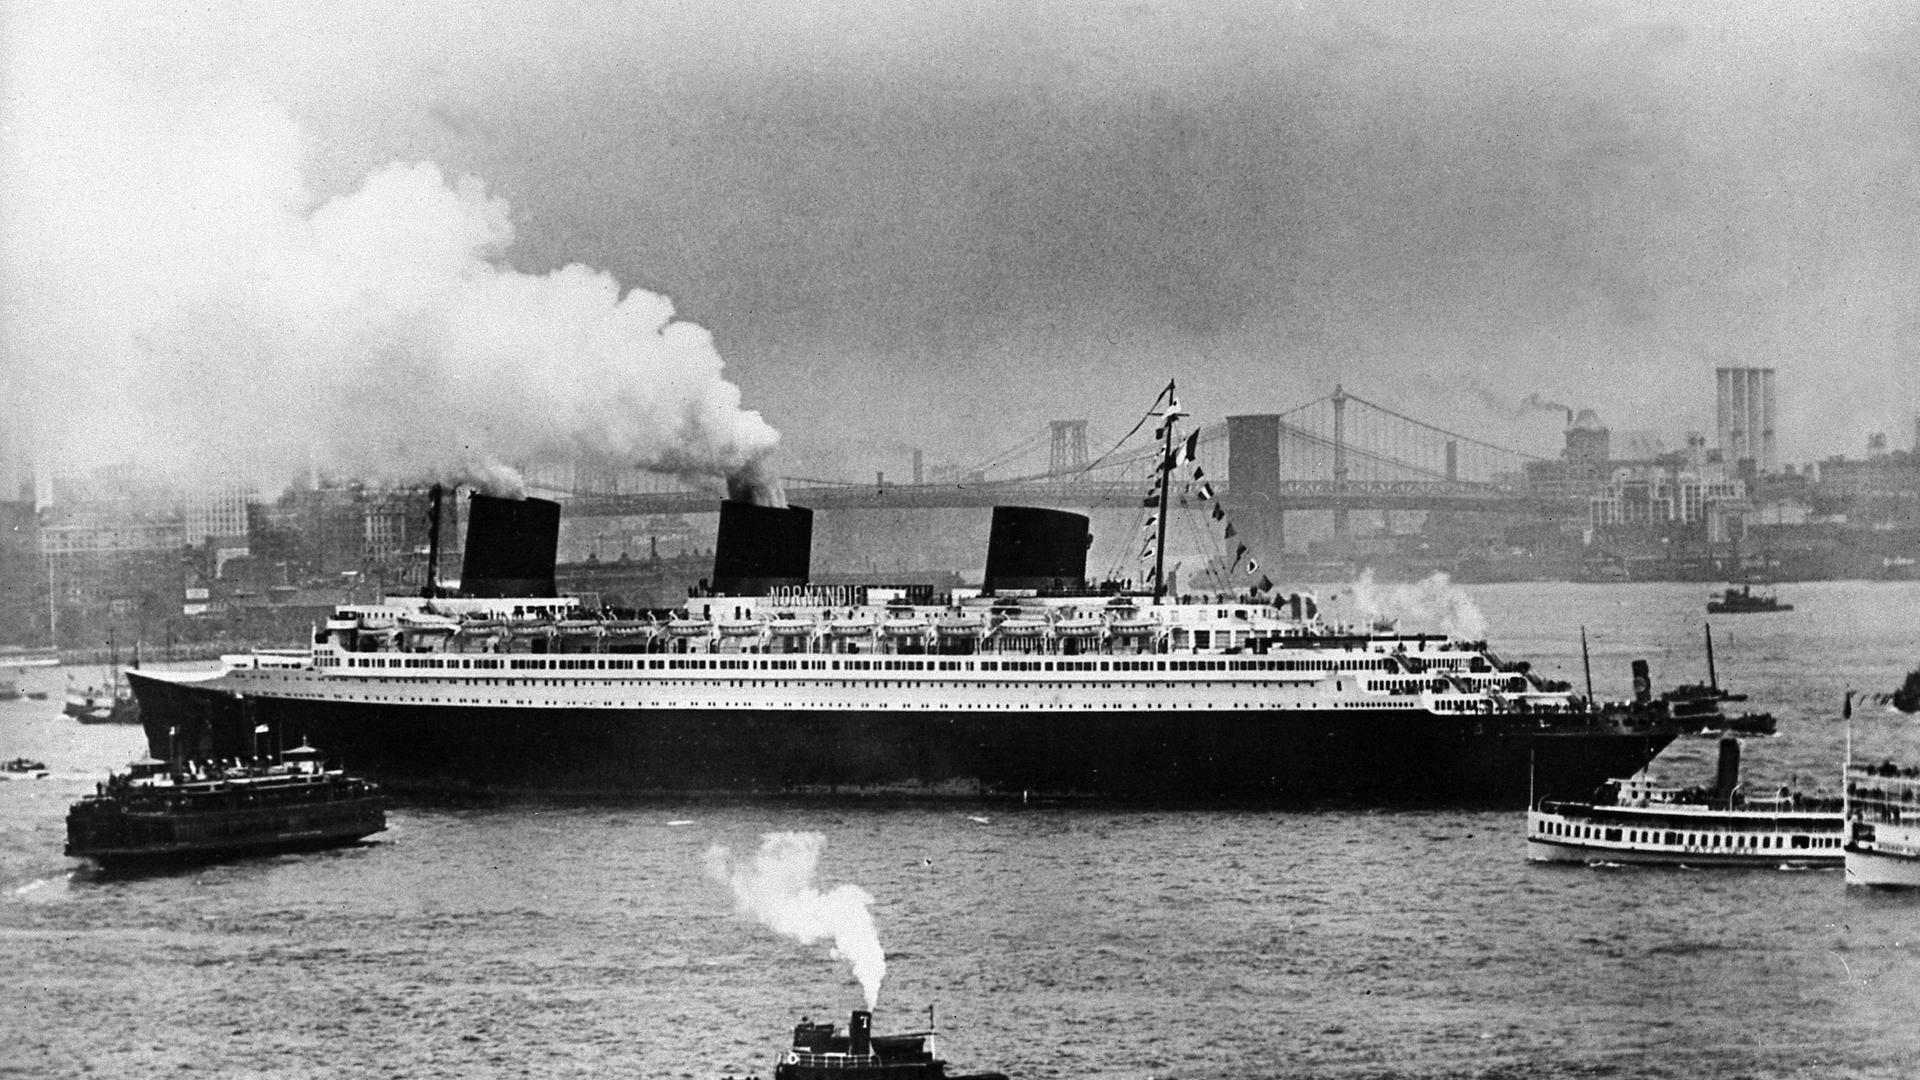 Der französische Luxusliner "Normandie" bei seiner Ankunft im Hafen von New York im August 1939. Aus zwei von drei Schornsteinen kommt Rauch. Mehrere kleinere Schiffe fahren um die "Normandie" herum. Im Hintergrund ist eine Brücke und die Silhouetten von Gebäuden zu sehen.